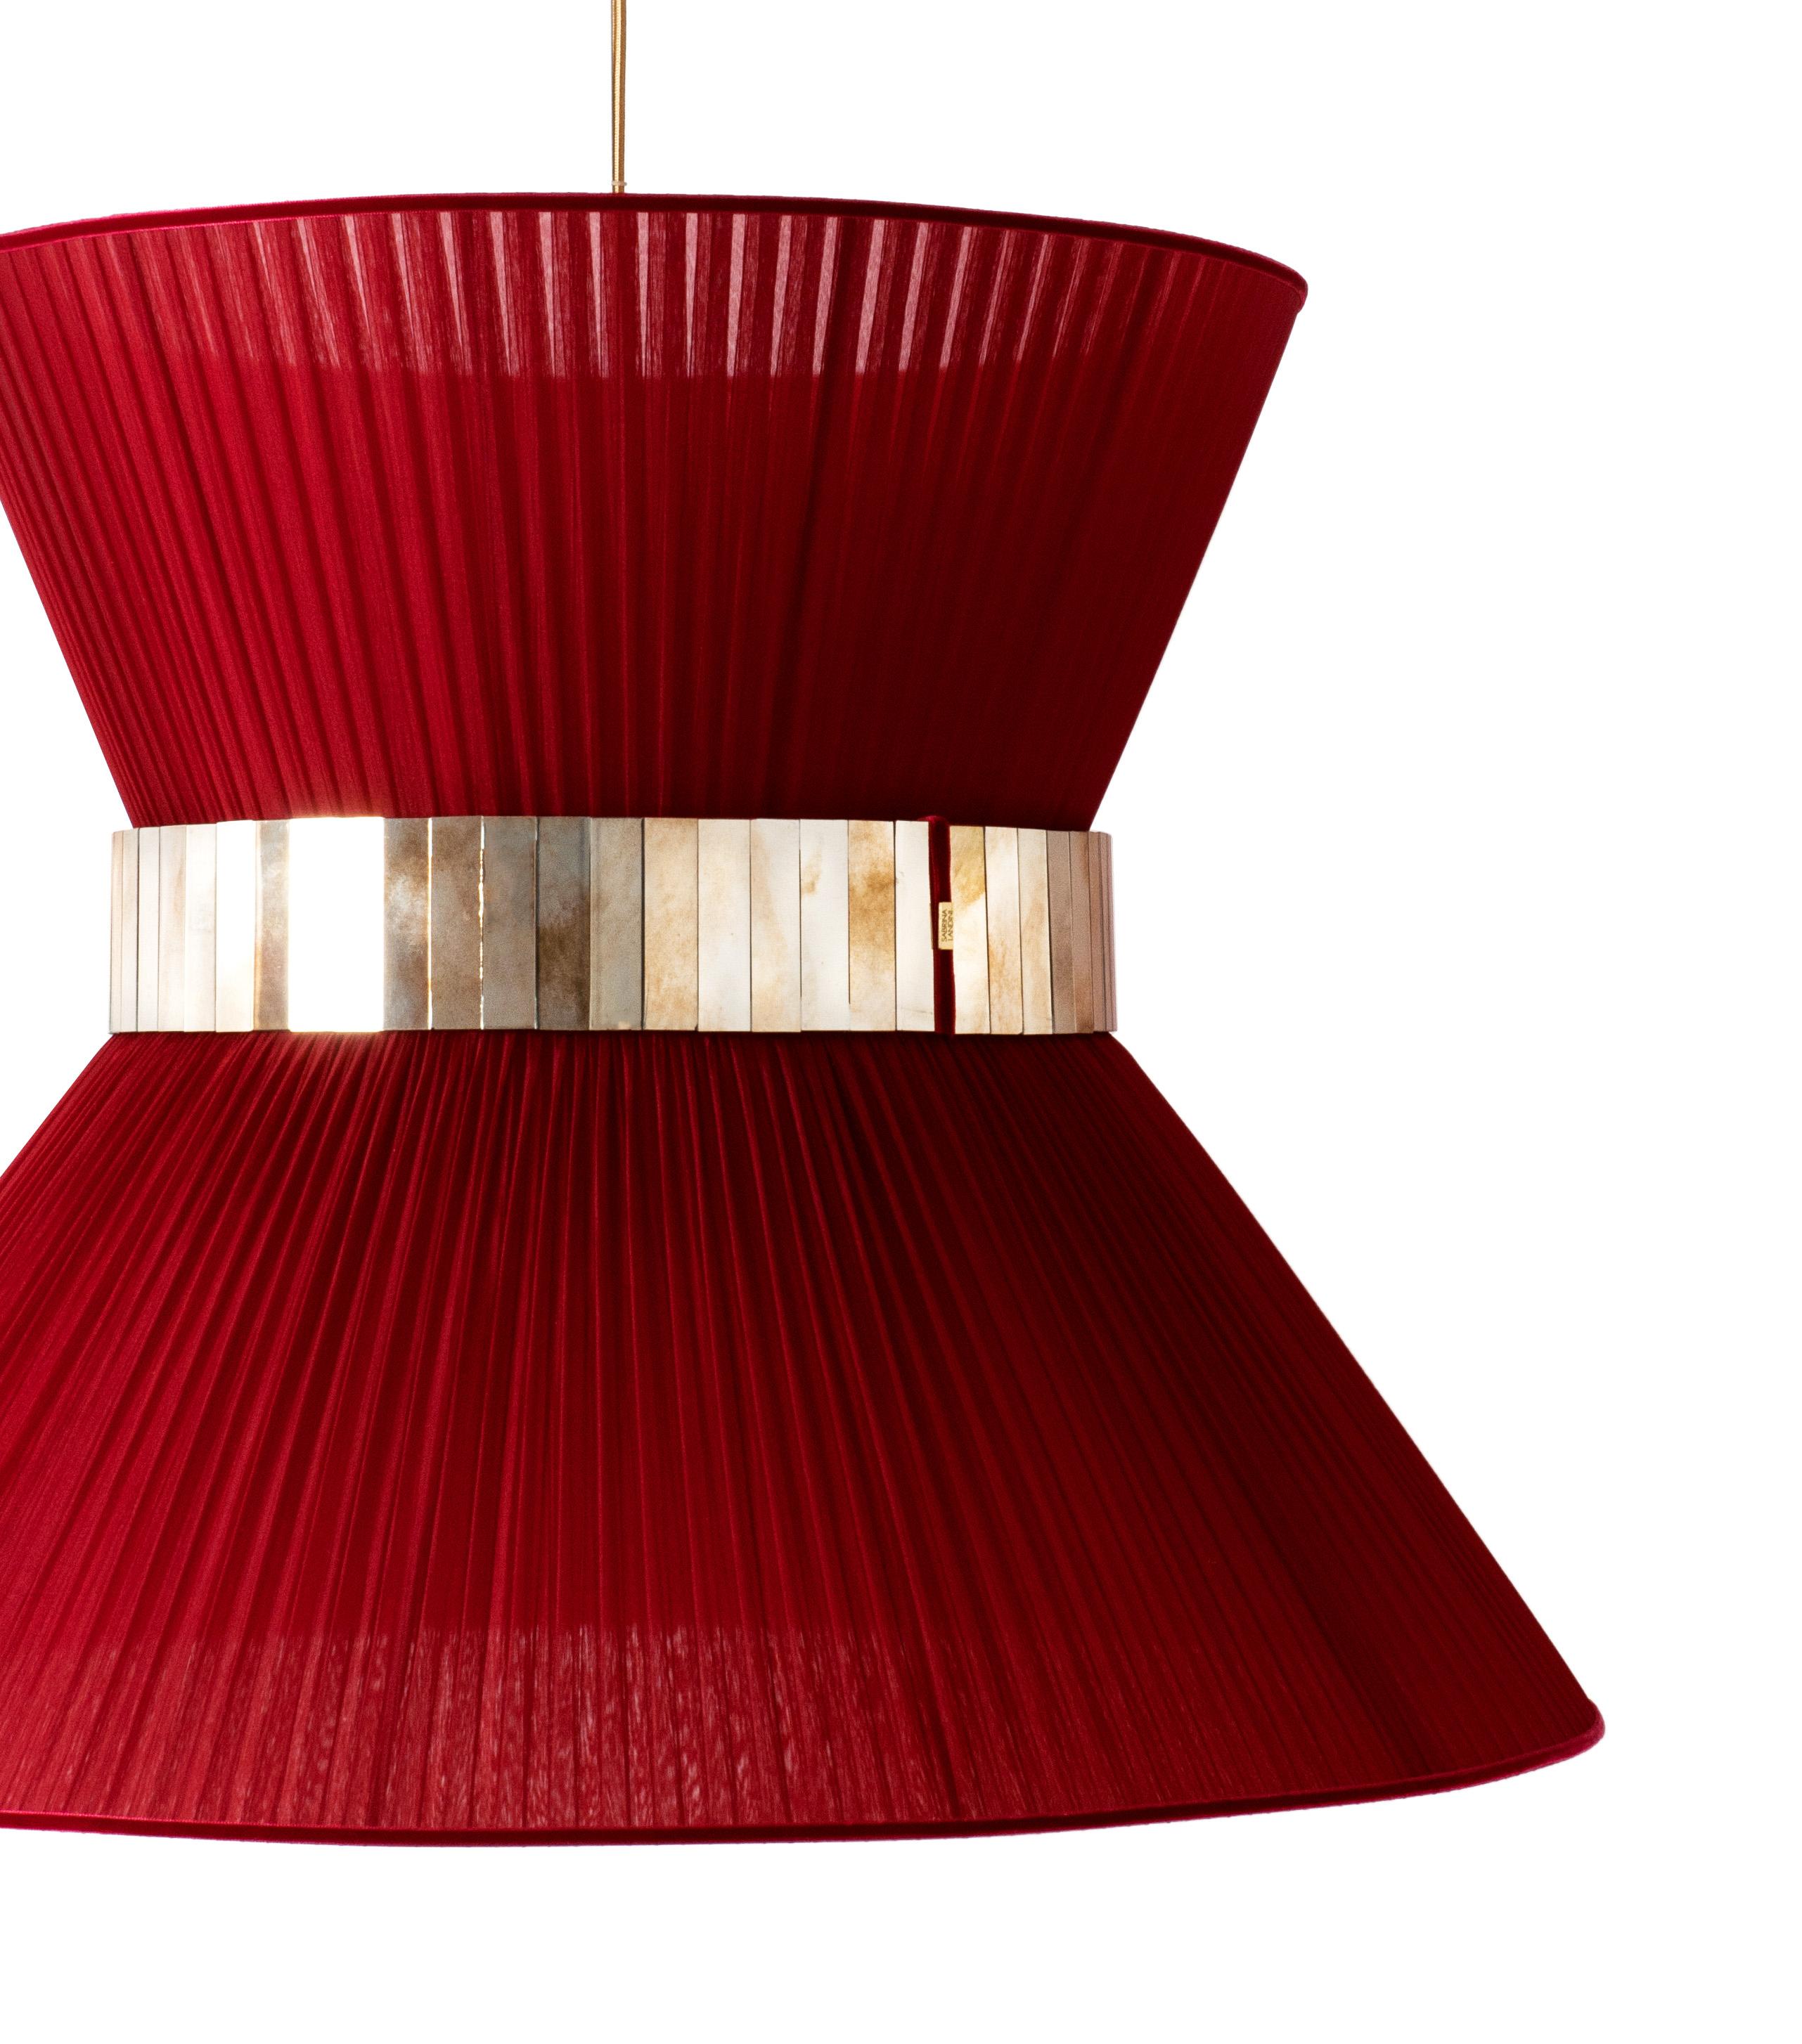 TIFFANY die kultige Lampe!

Sabrinas atemberaubende Collection'S von Tiffany-Lampen wird vorgestellt.
Sabrina Landini wählt die schönsten MATERIALIEN aus und stellt sie zu weltweit anerkannten Dekorationsartikeln zusammen.

Eleganz und Farben sind